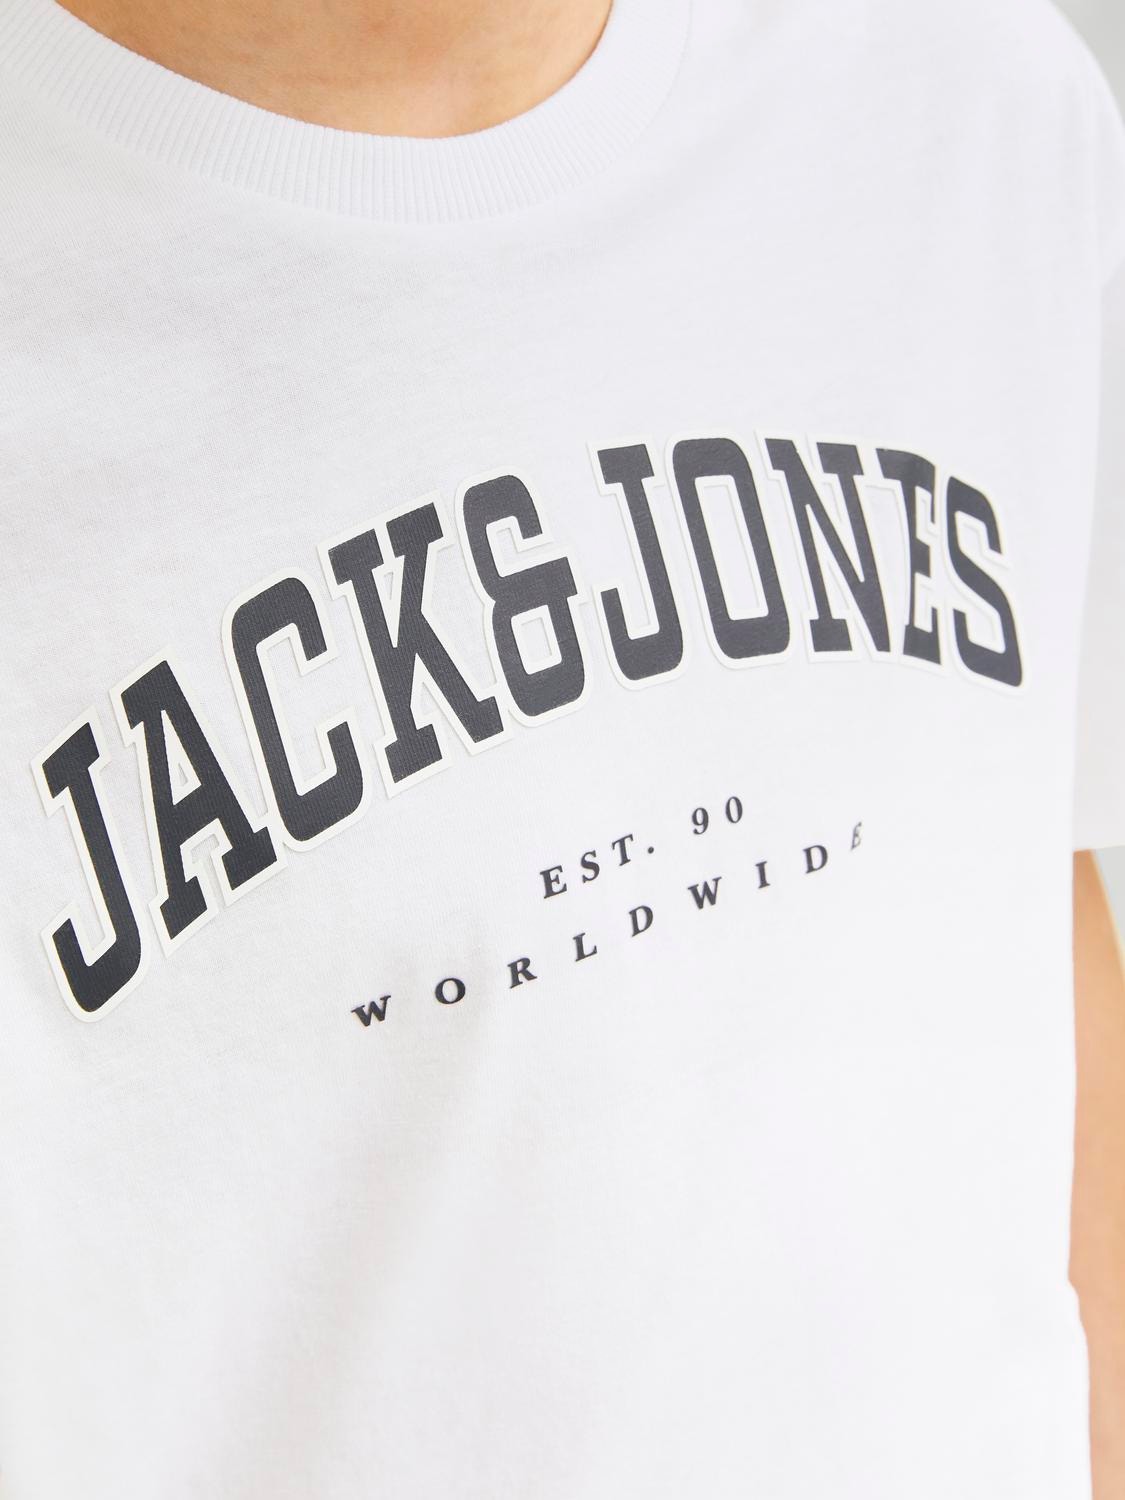 Jack & Jones Logo T-shirt For boys -White - 12258924